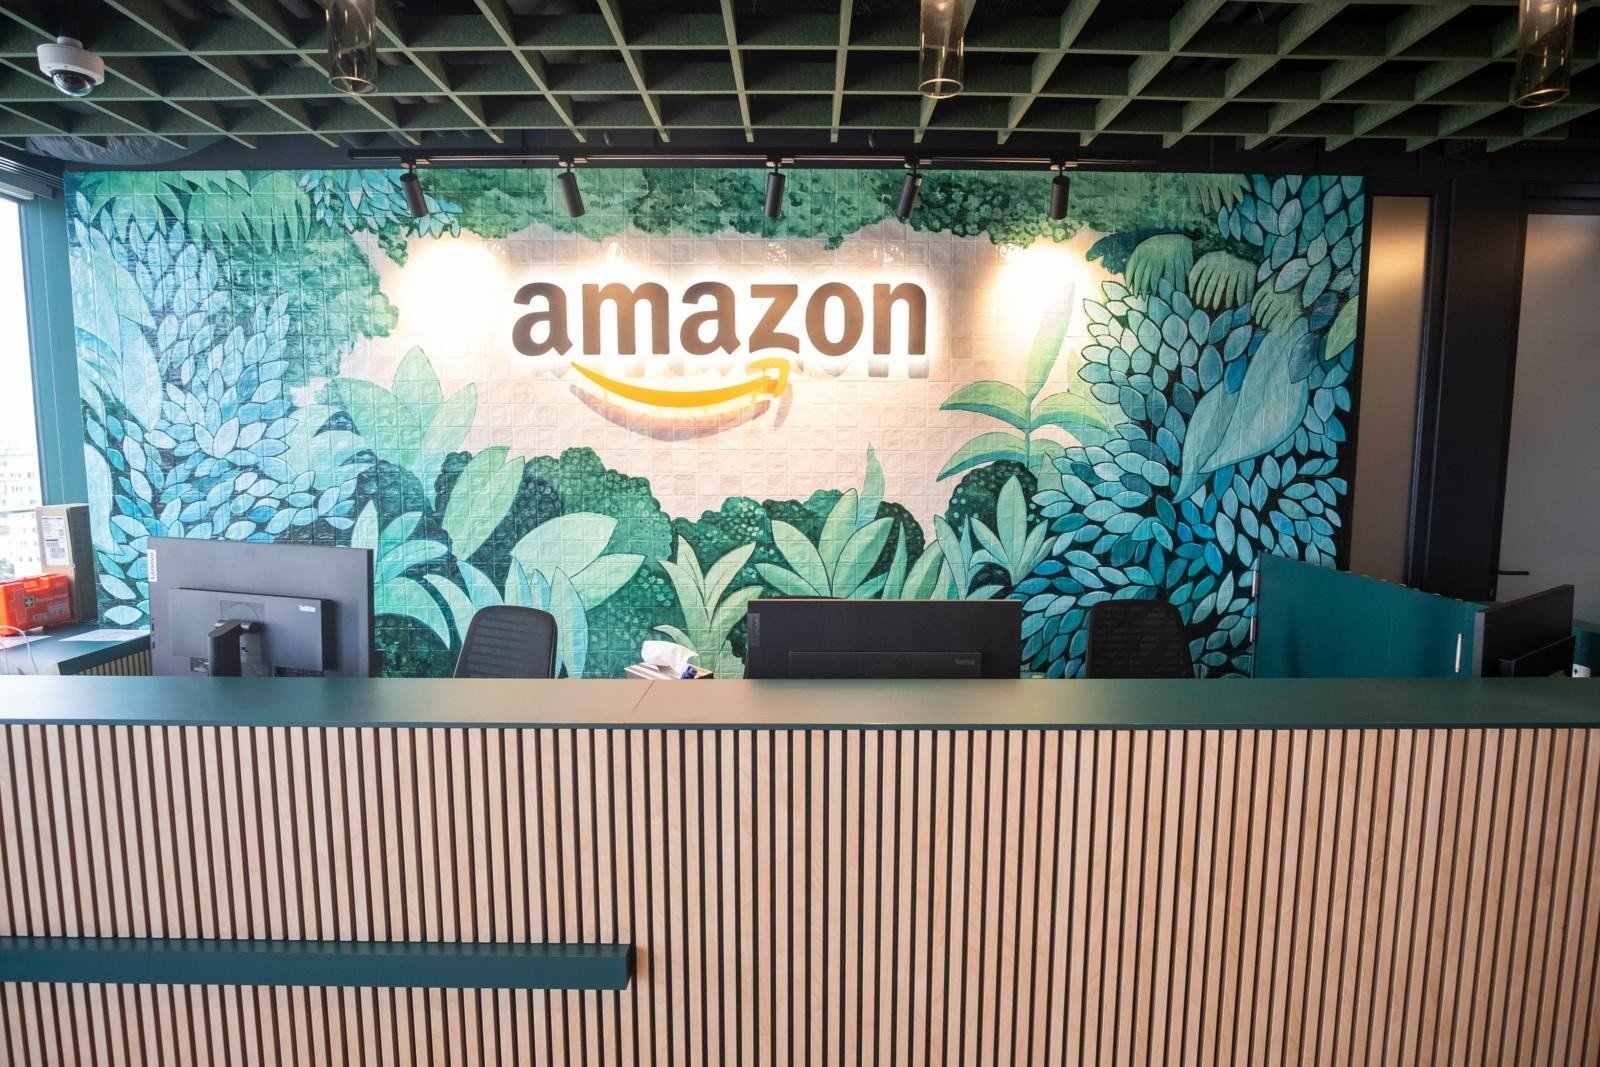 Firmie Amazon grozi olbrzymia kara finansowa. UOKiK stawia szereg zarzutów,  spółka odpowiada | Strefa Biznesu